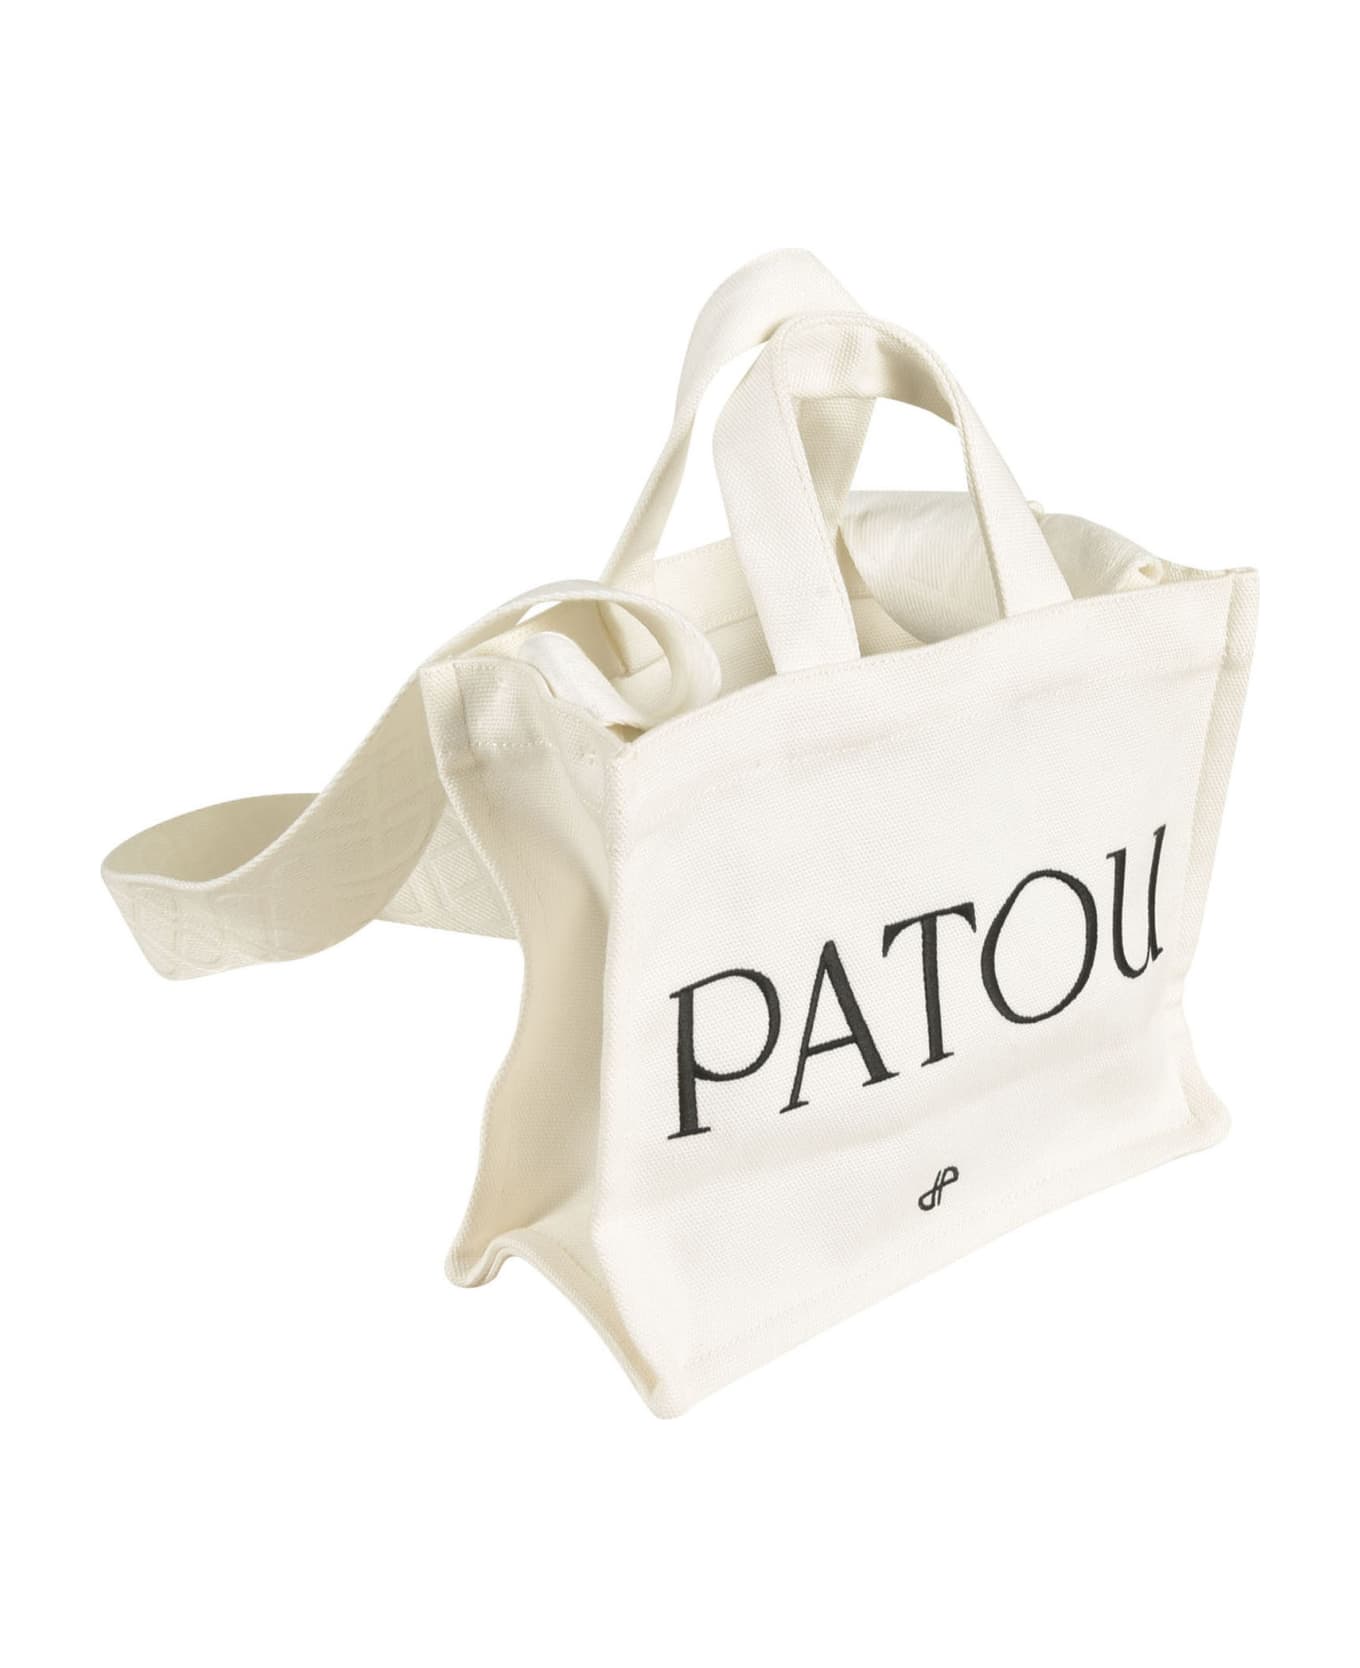 Patou Logo Print Tote - White